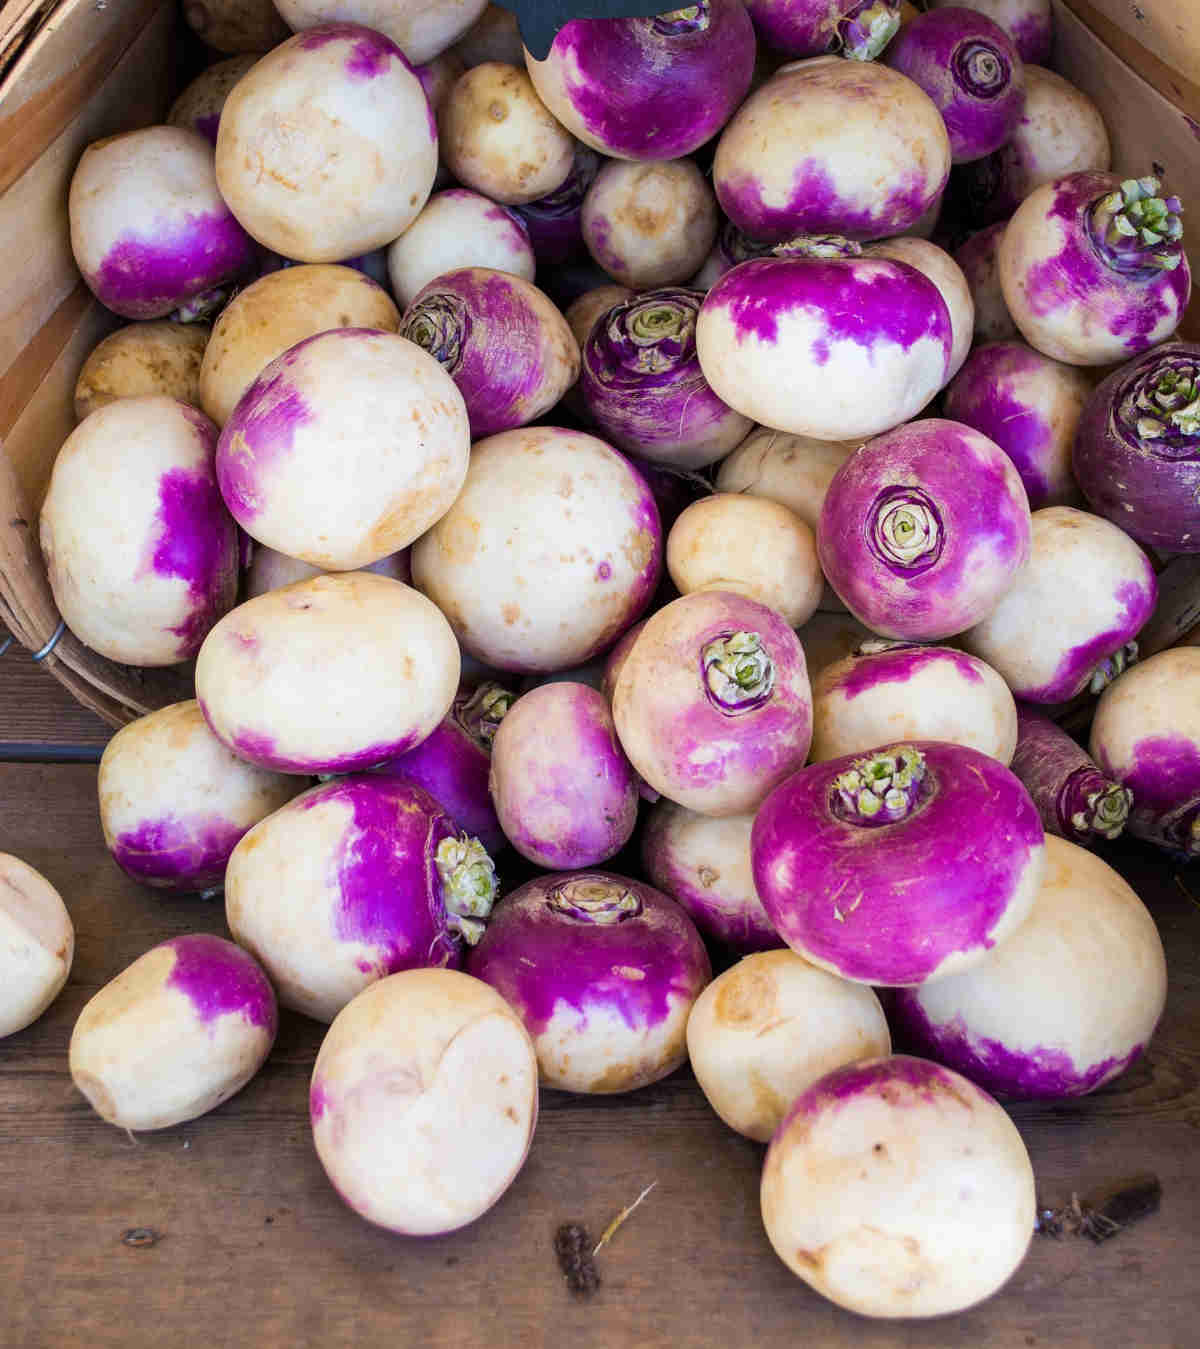 turnip as potato substitute